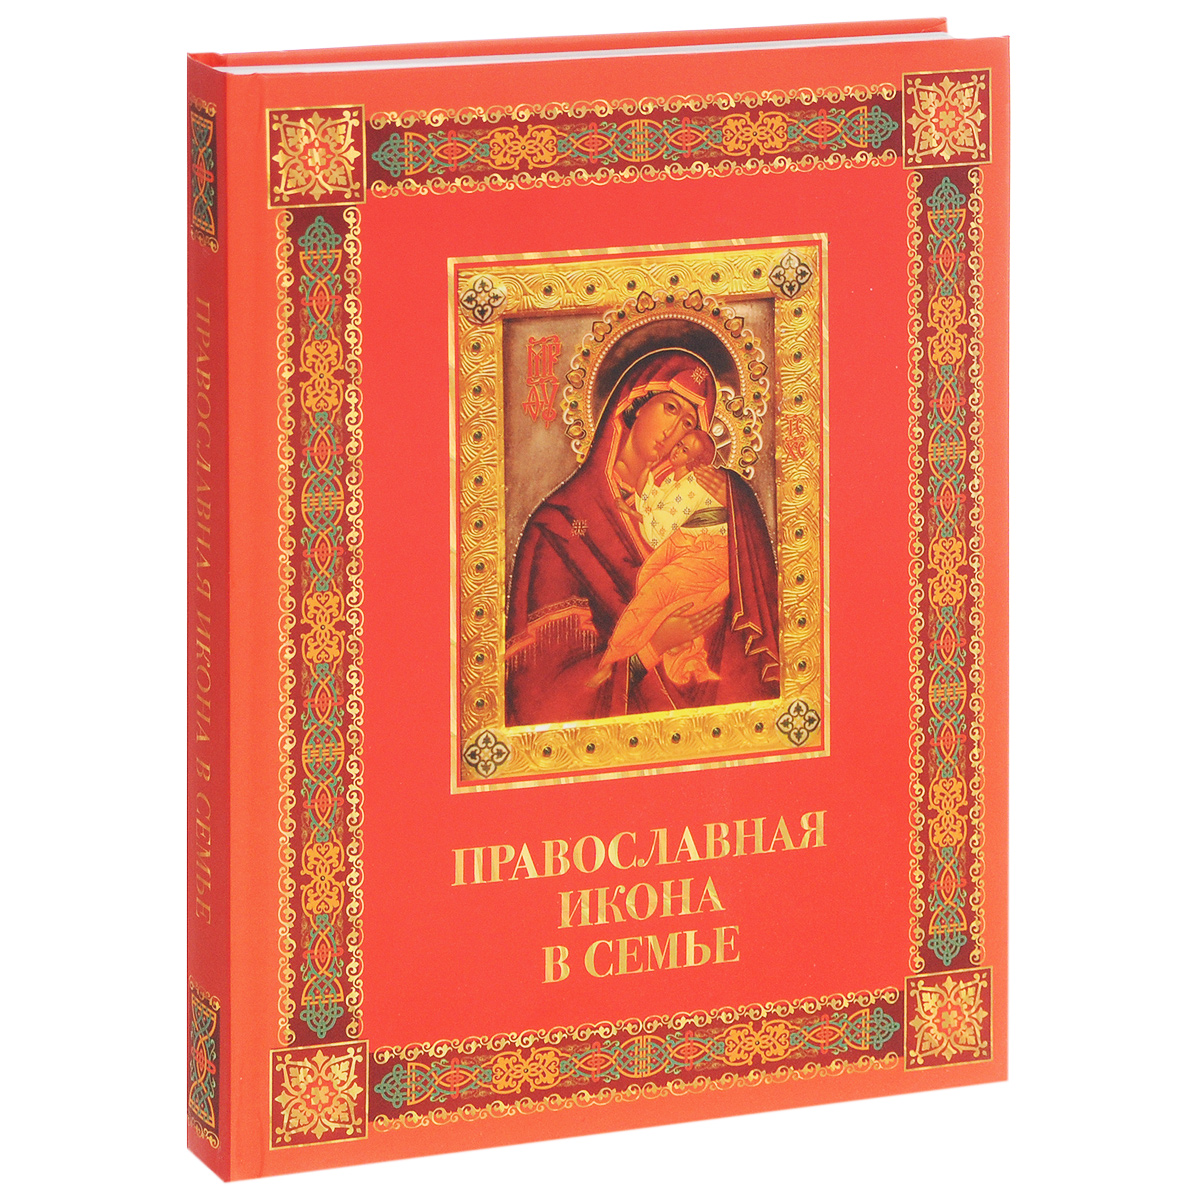 Православная книга это. Православные книги. Книга православная икона в семье. Икона с книгой. Православная книга картинки.